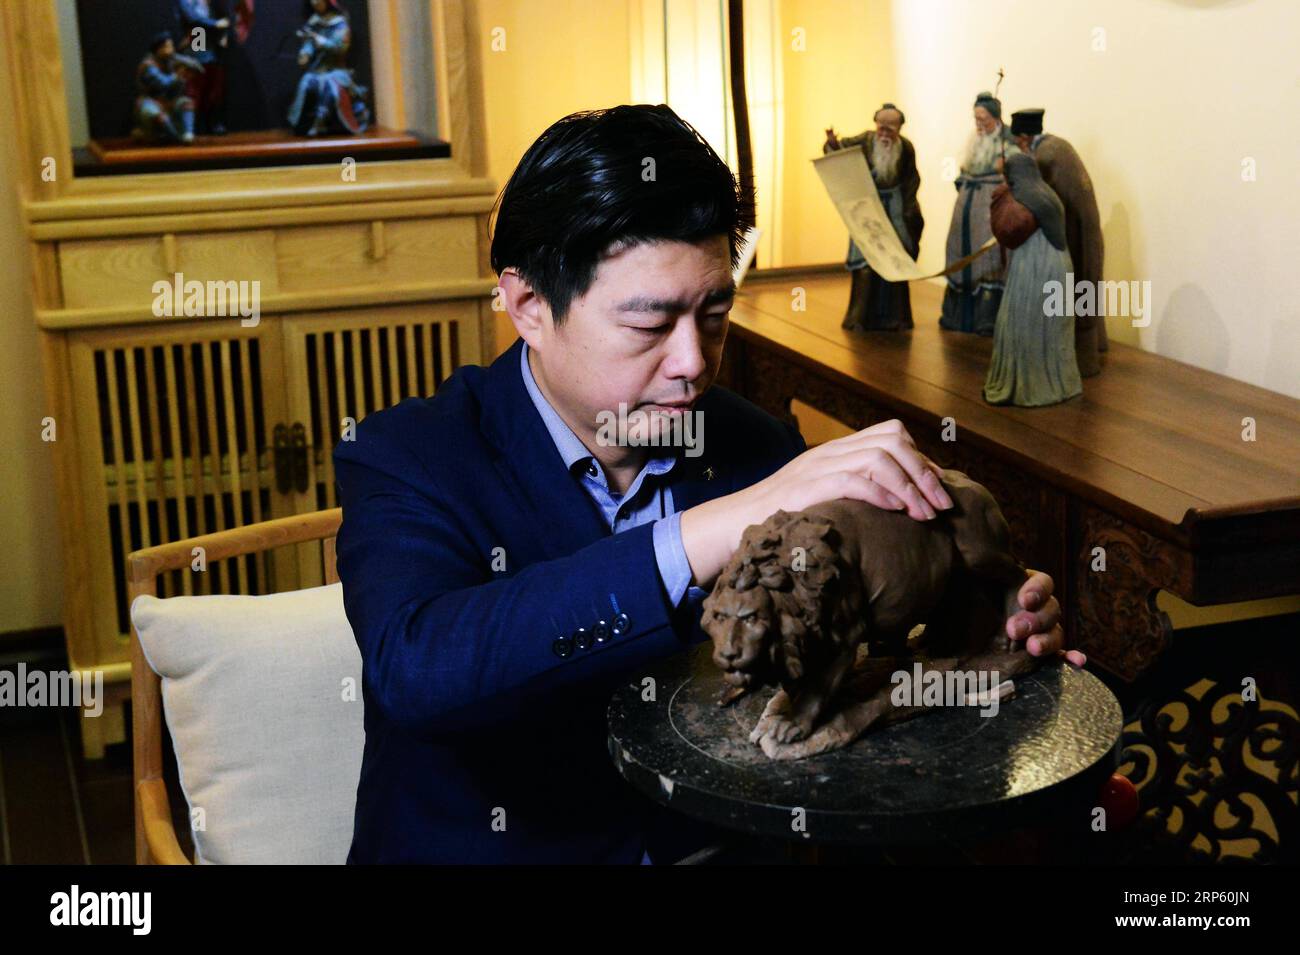 (181229) -- PÉKIN, 29 décembre 2018 (Xinhua) -- Zhang Yu, le fabricant de sixième génération de figurines en argile Zhang, pétrisse une figurine dans son atelier de la galerie d'art Clay Figure Zhang à Tianjin, dans le nord de la Chine, le 28 décembre 2018. Figure d'argile Zhang est un nom familier de l'art populaire traditionnel en Chine, et une telle œuvre a une histoire de près de 200 ans. Zhang Yu, le fabricant de figurines en argile de sixième génération de sa famille, a pris en charge l’entreprise familiale en 1996, alors qu’il n’avait que 18 ans. Au fil du temps, le métier et la marque ont évolué. Au lieu de faire des figurines et de les vendre comme un vendeur de rue, il h Banque D'Images